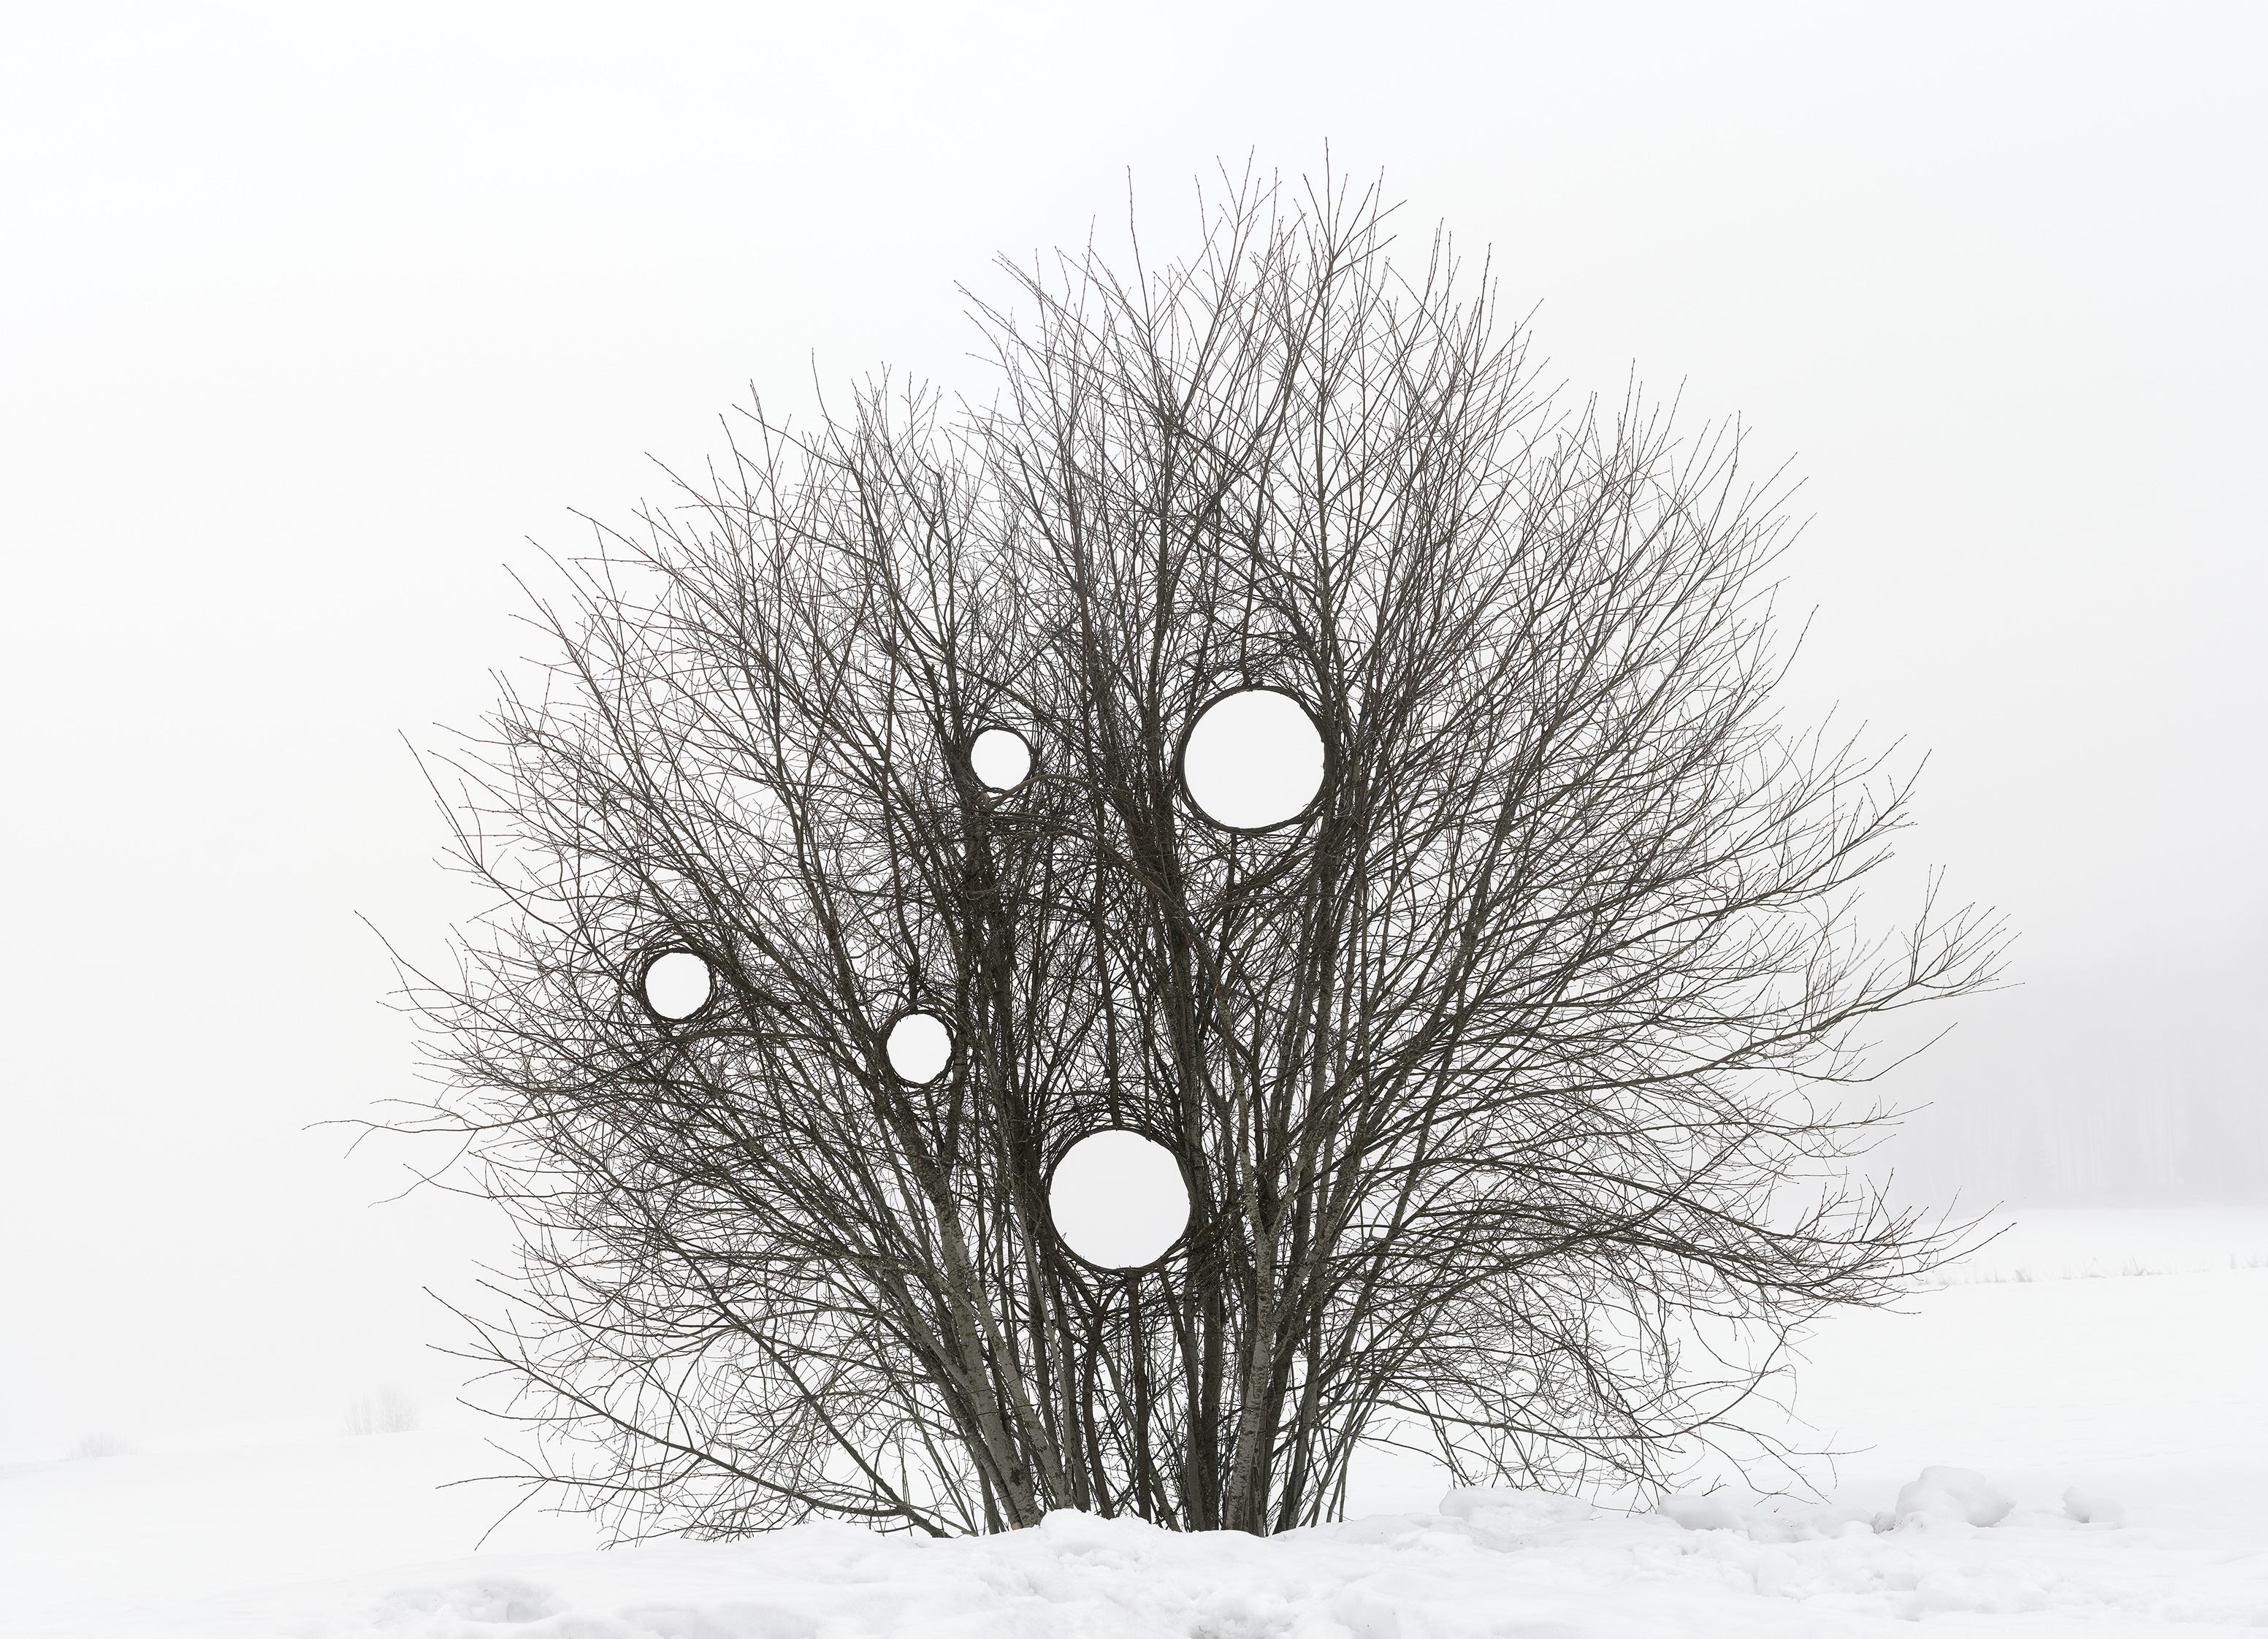 foto i vintertid av träd med ett grenverk som formats och visar hål 